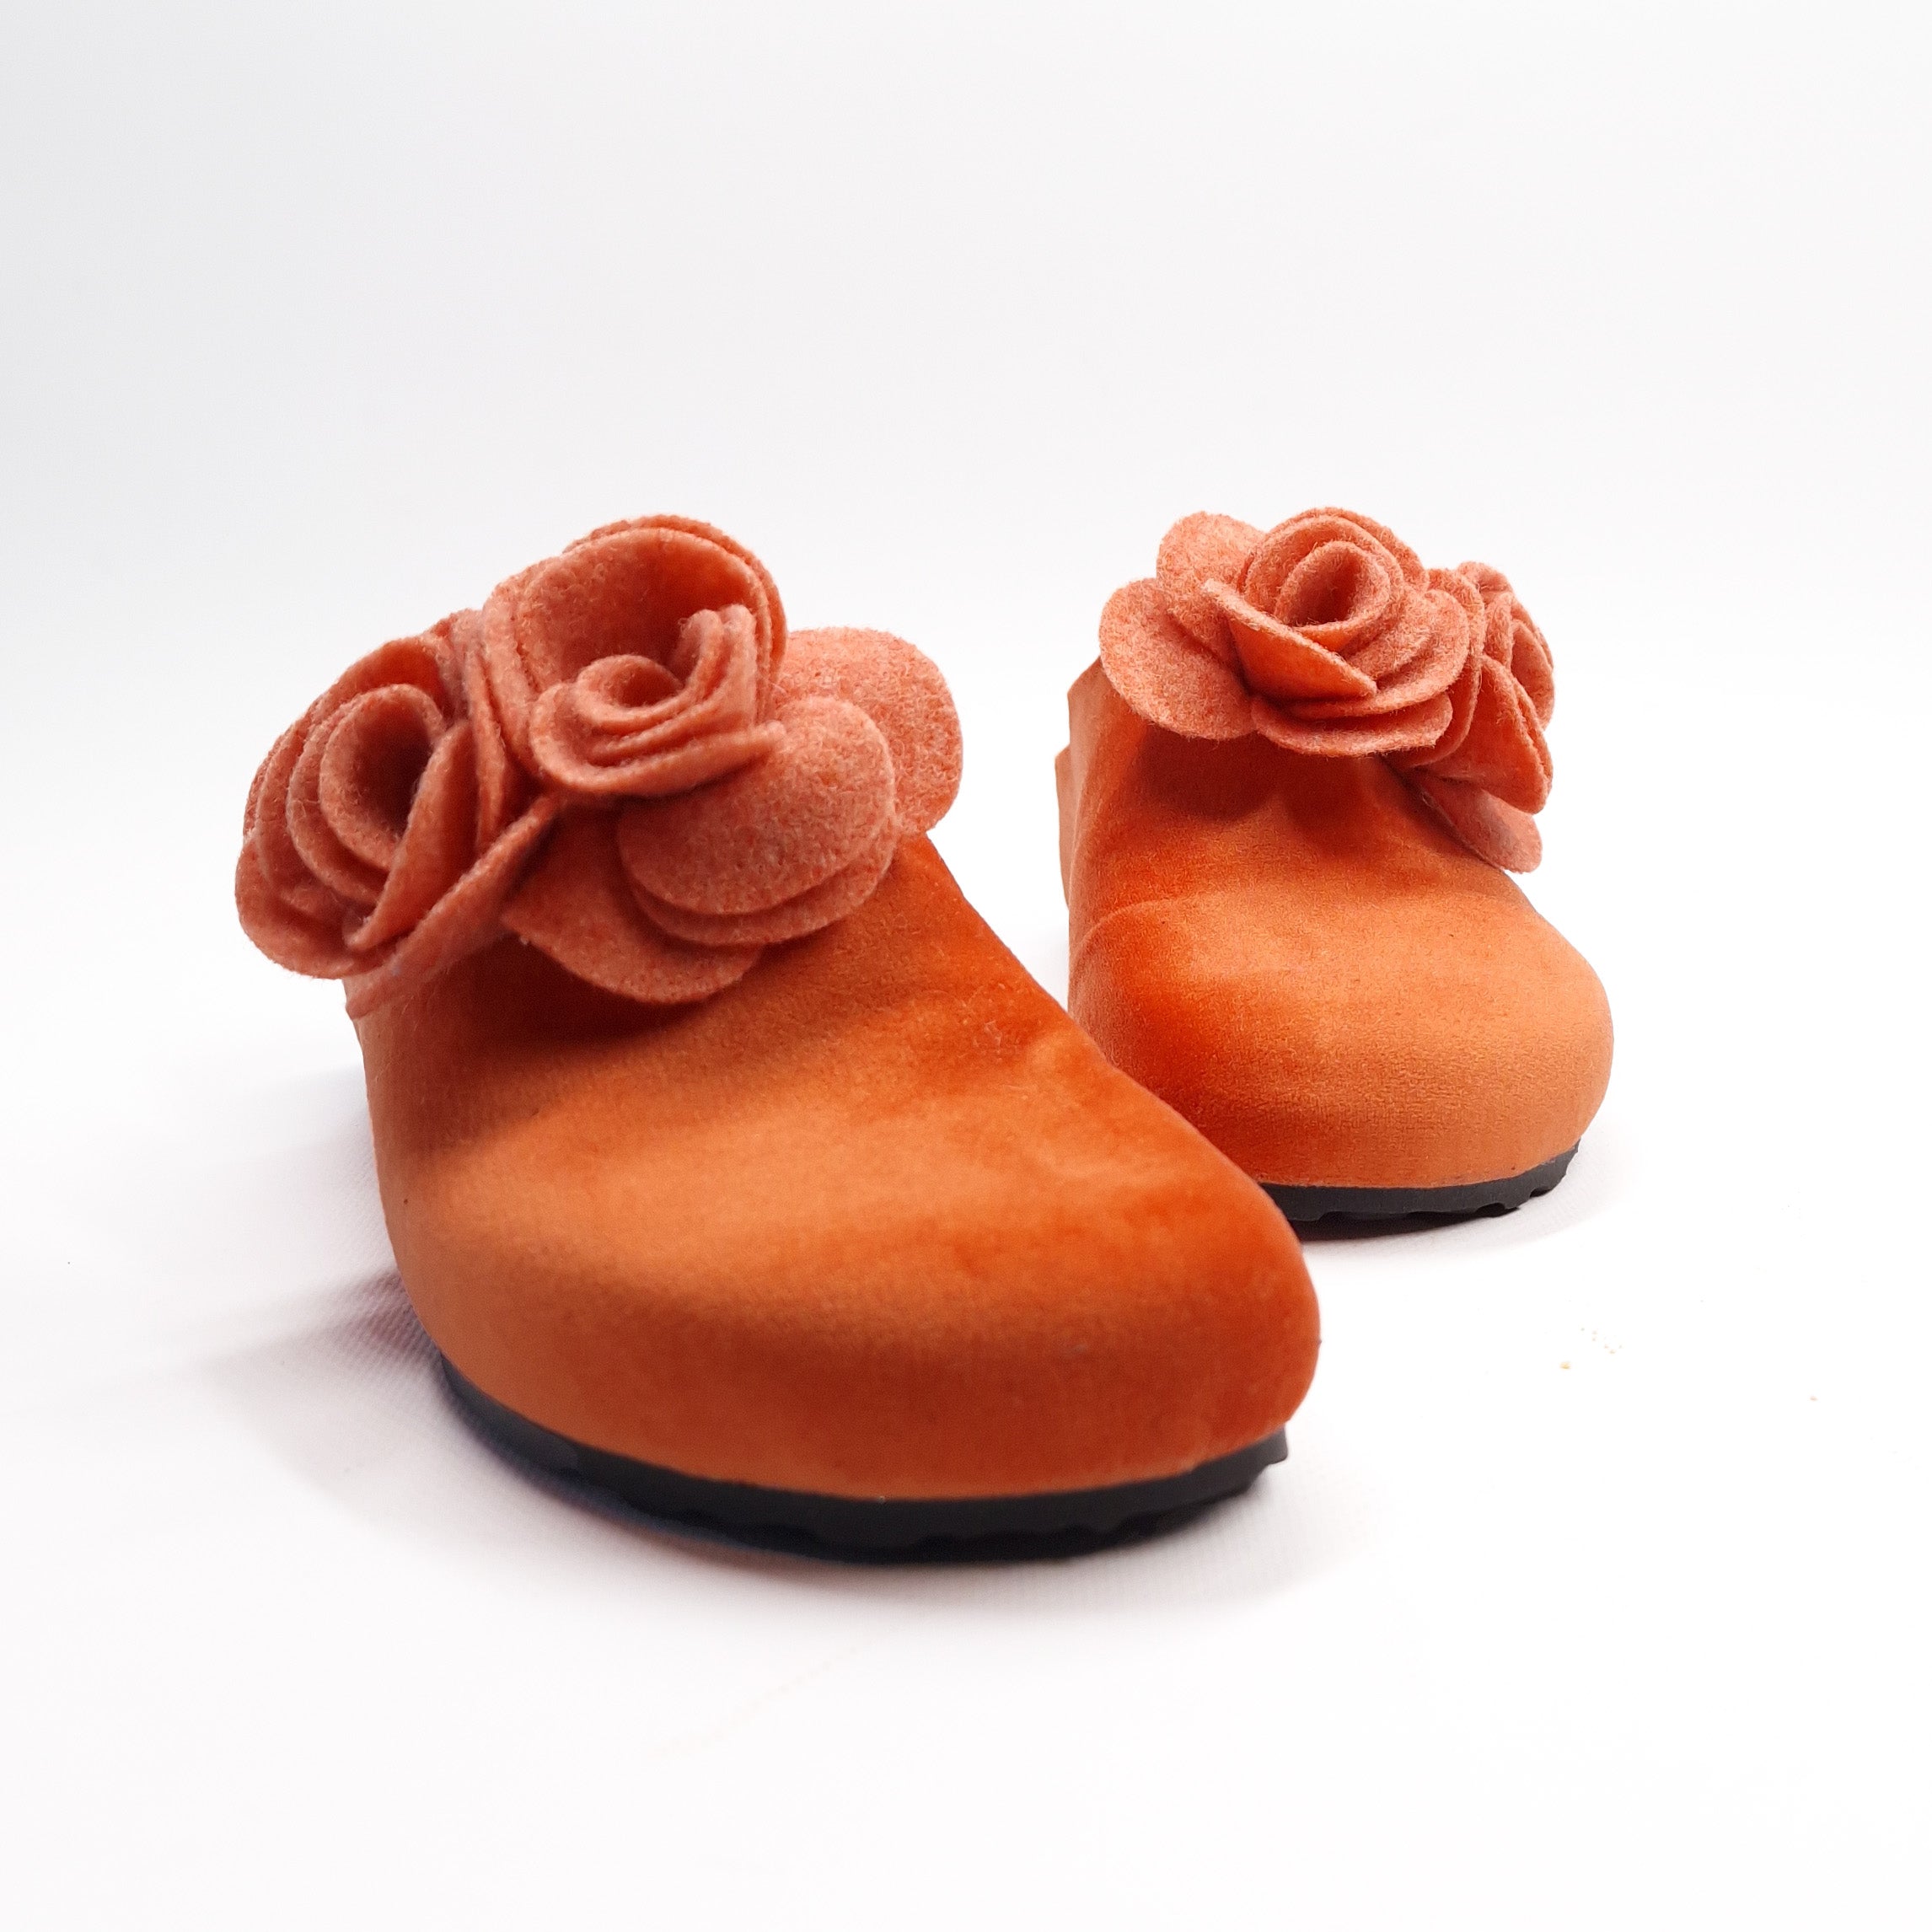 Pantofola DONNA in velluto-lana. Colore VARI con fiori | VELA